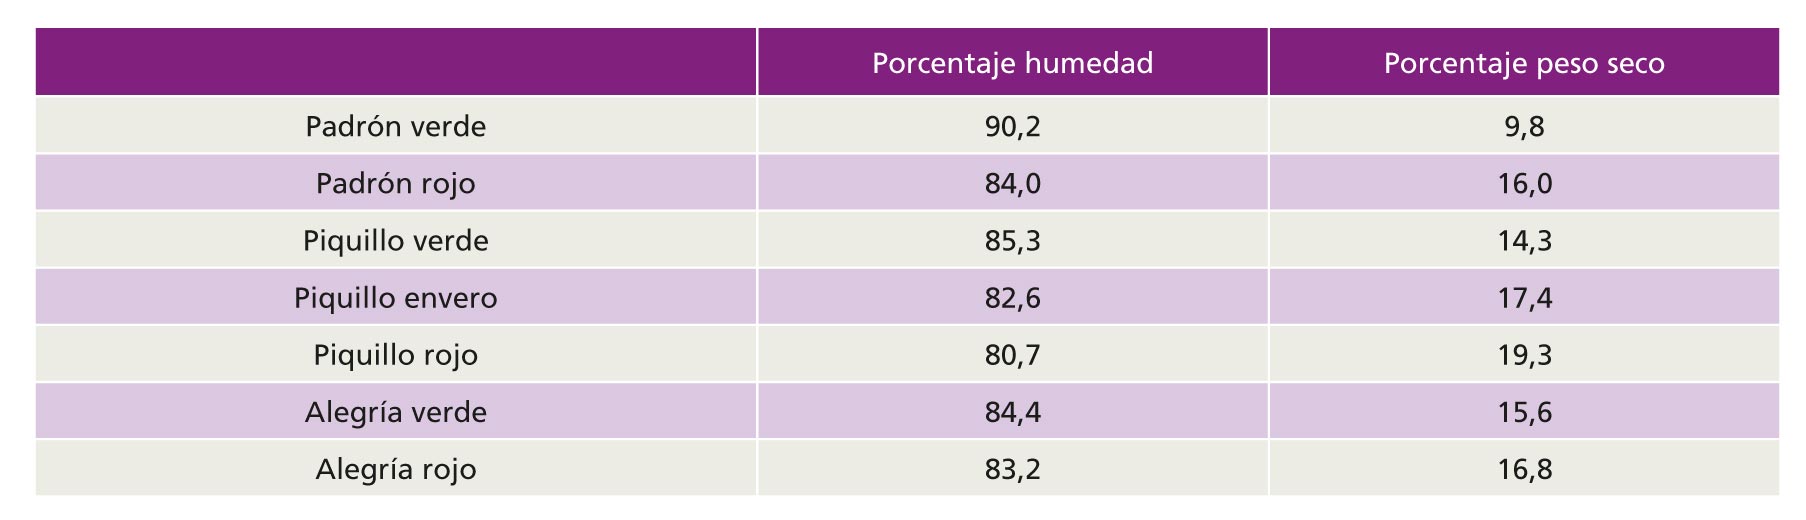 Tabla 2. Porcentajes de humedad y peso seco de frutos de distintas variedades de pimiento